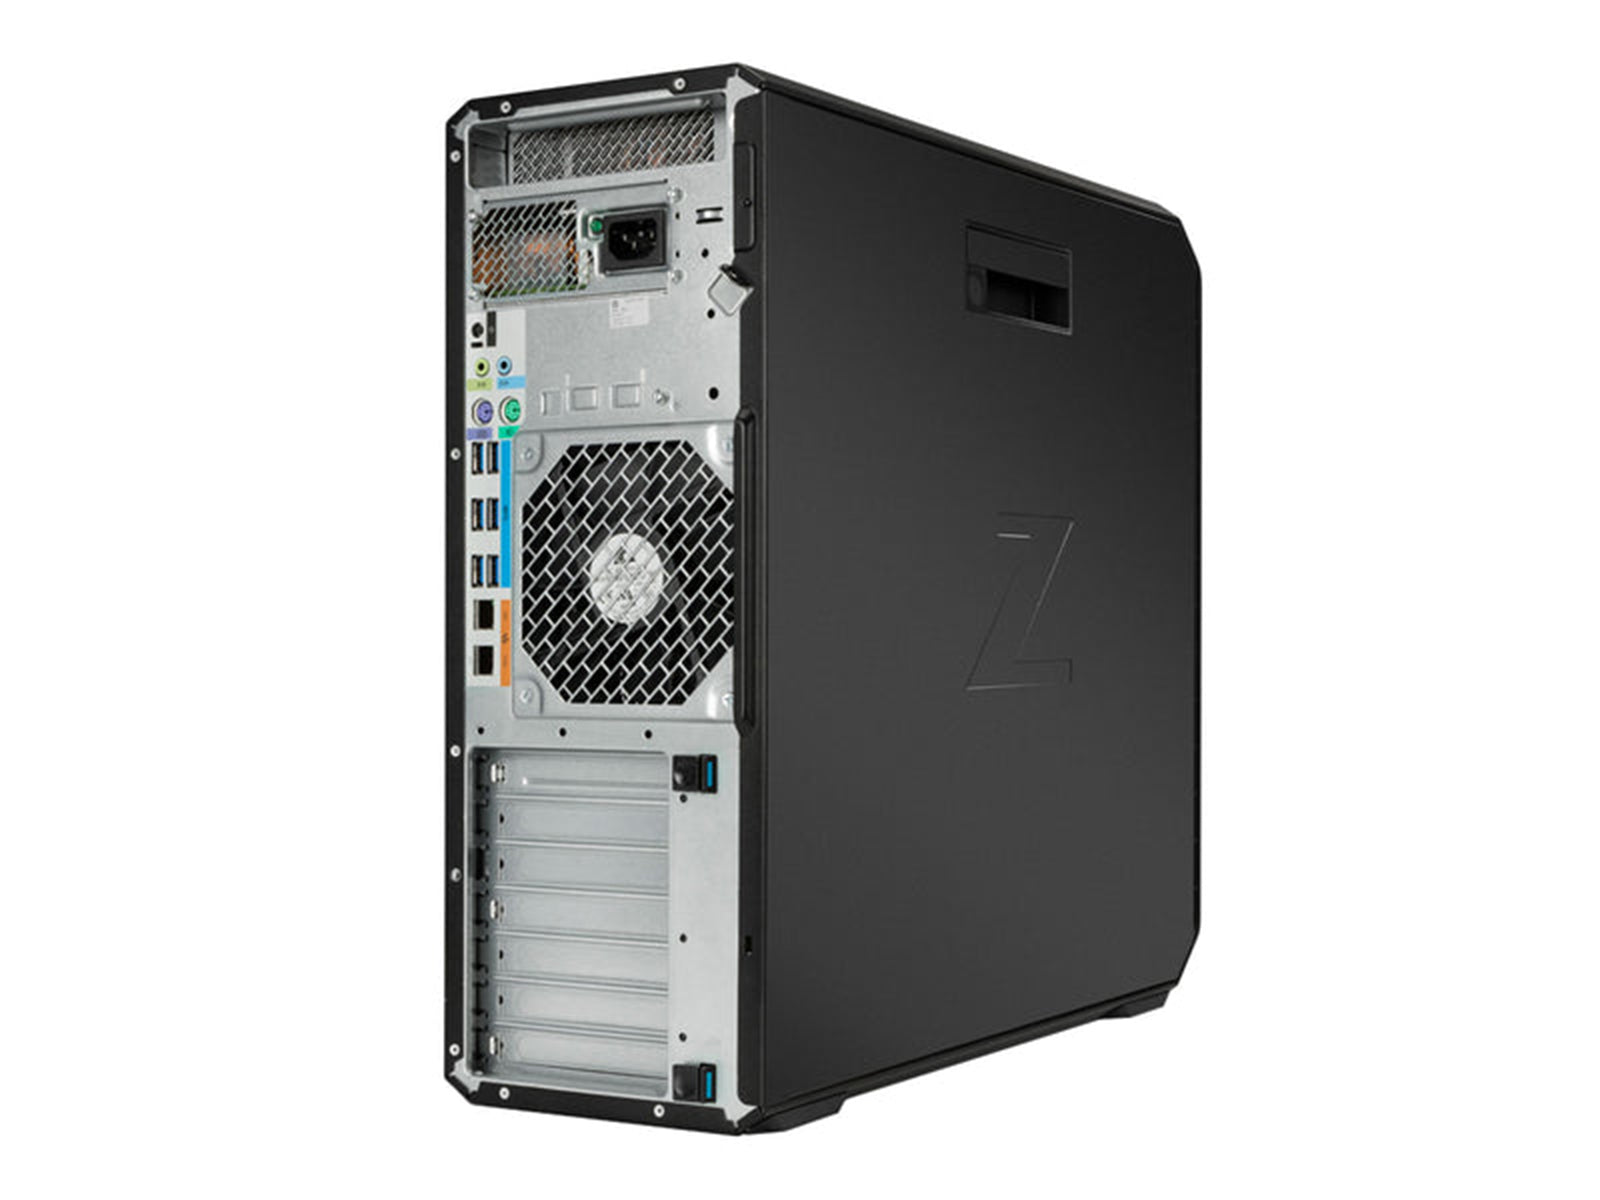 HP Z6 G4 | Intel Xeon Gold 5118 | 64GB DDR4 | 512GB NVMe SSD + 1TB HDD | Quadro P2200 | Win10 Pro